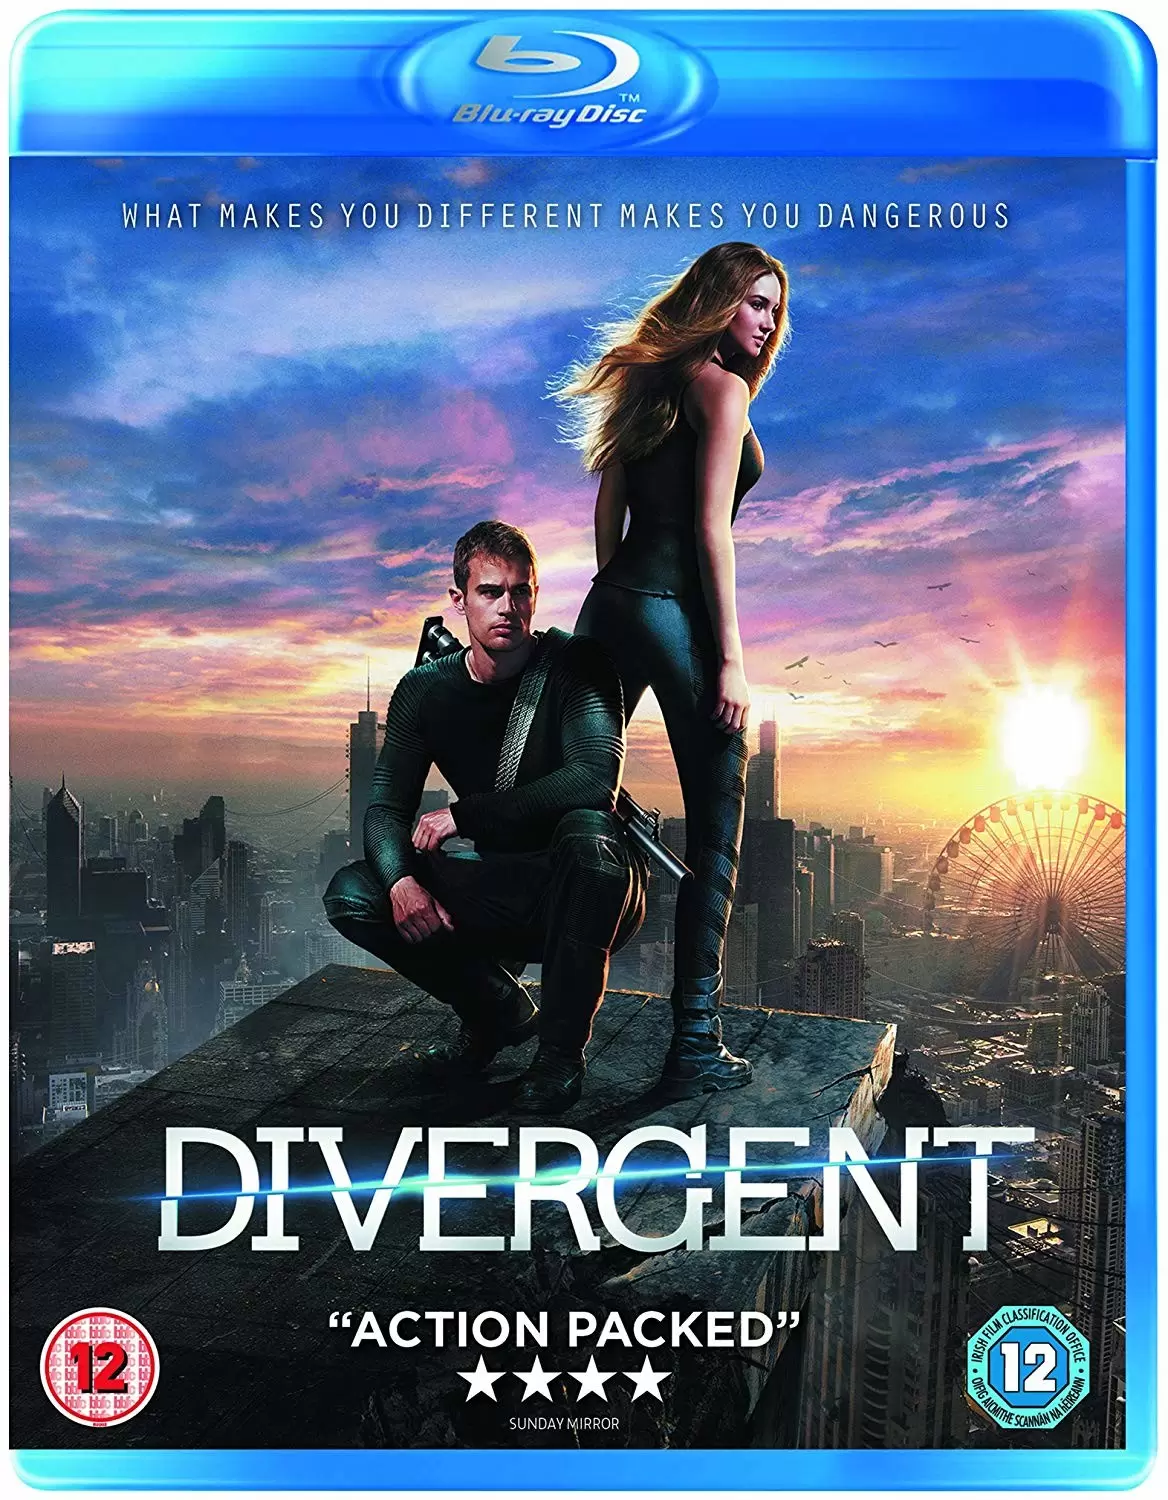 Coffret Divergente La trilogie DVD